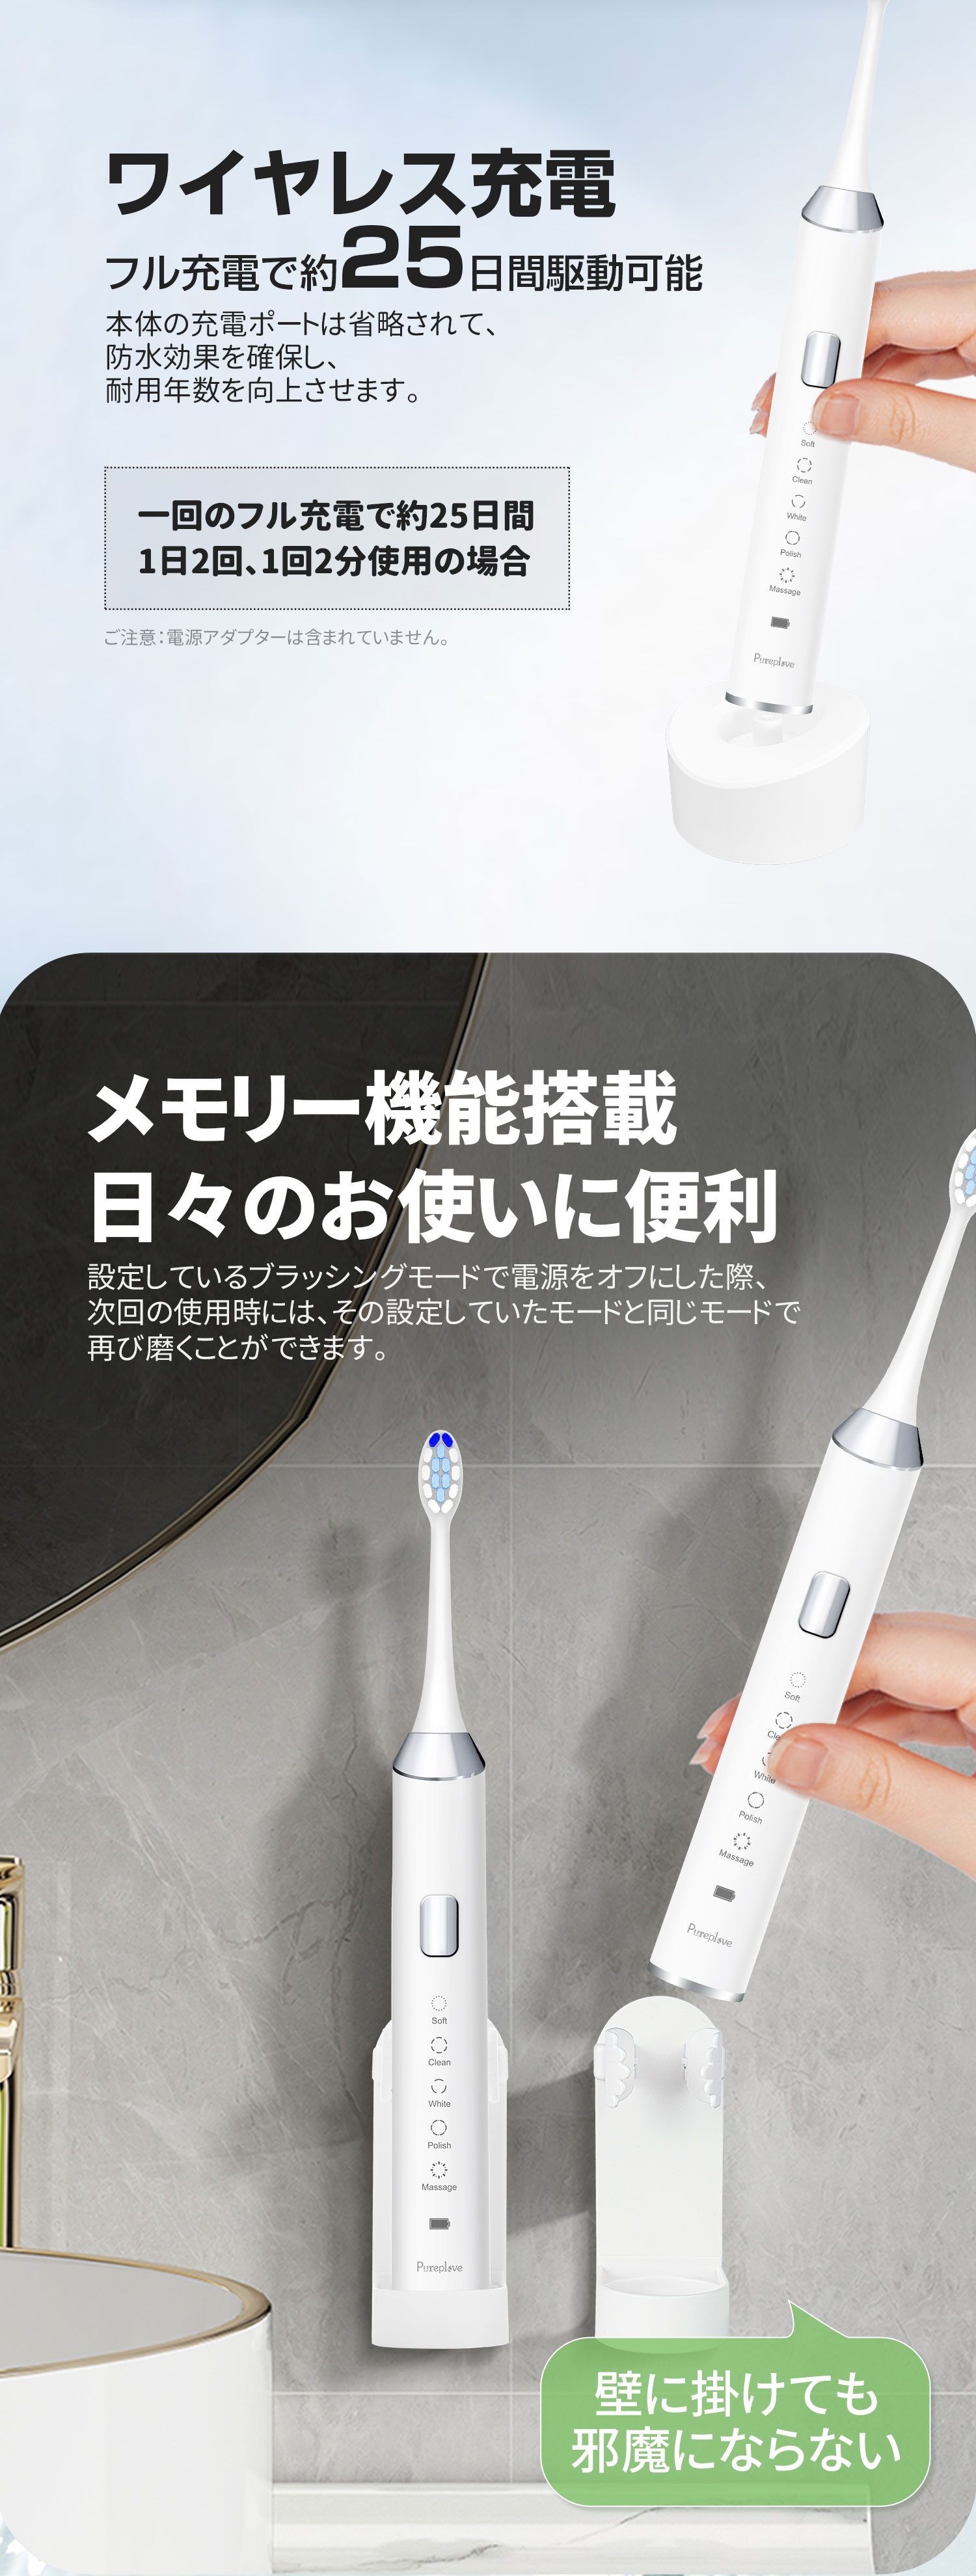 電動歯ブラシ 音波歯ブラシ IPX7防水 静音 38000回転/分 歯ブラシ 替え 